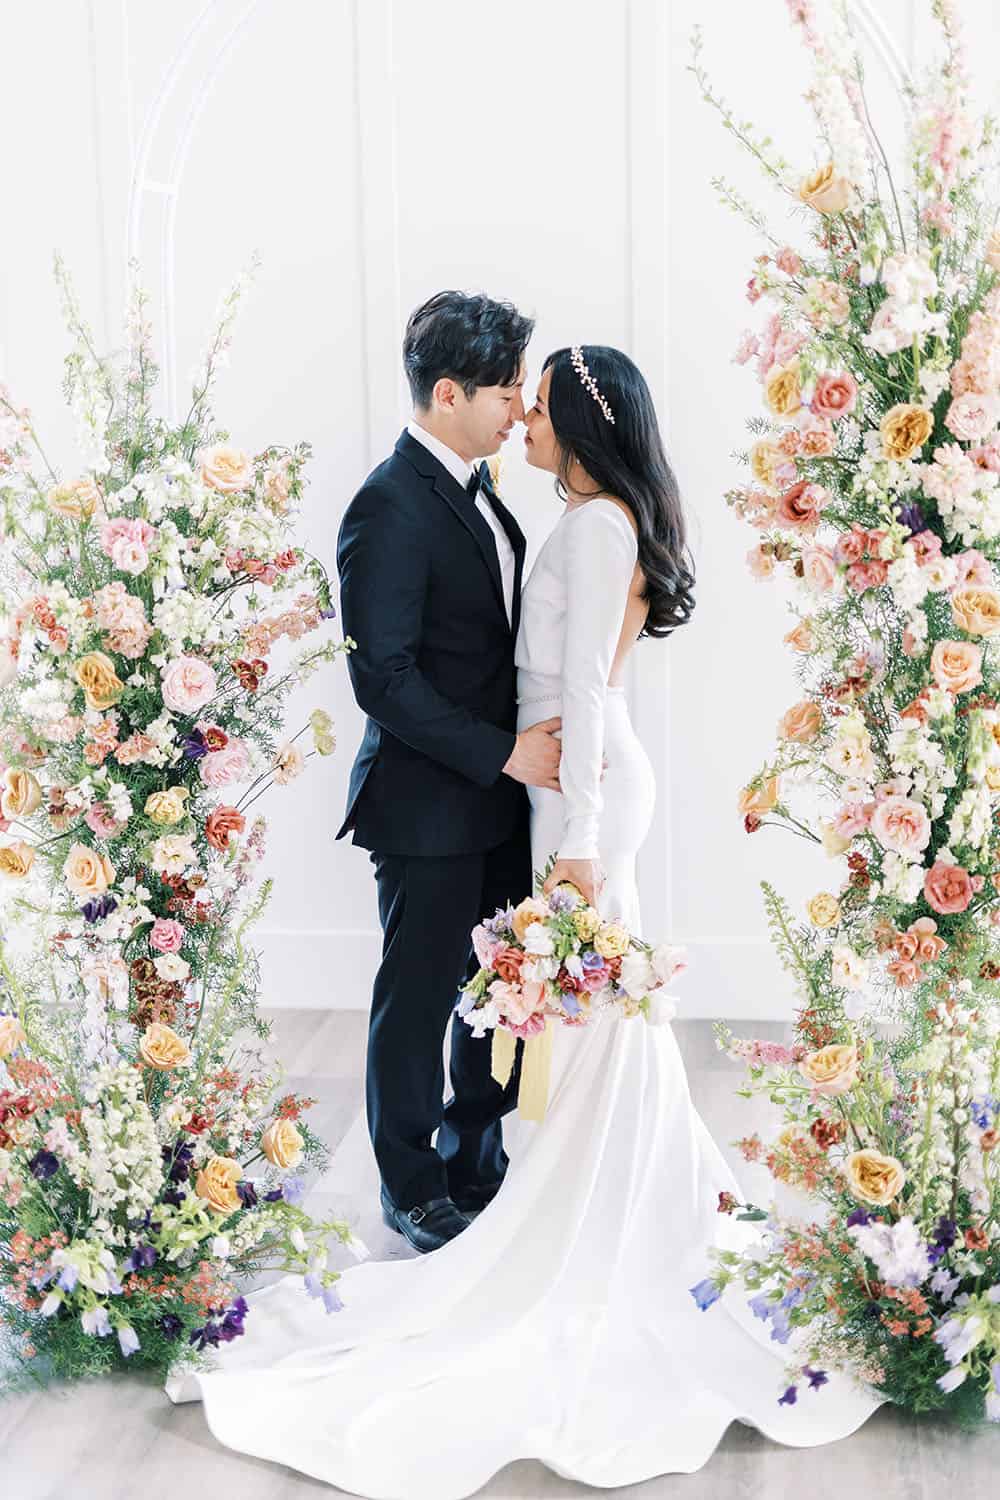 Utah Wedding Inspired By Dutch Still Life Flowers